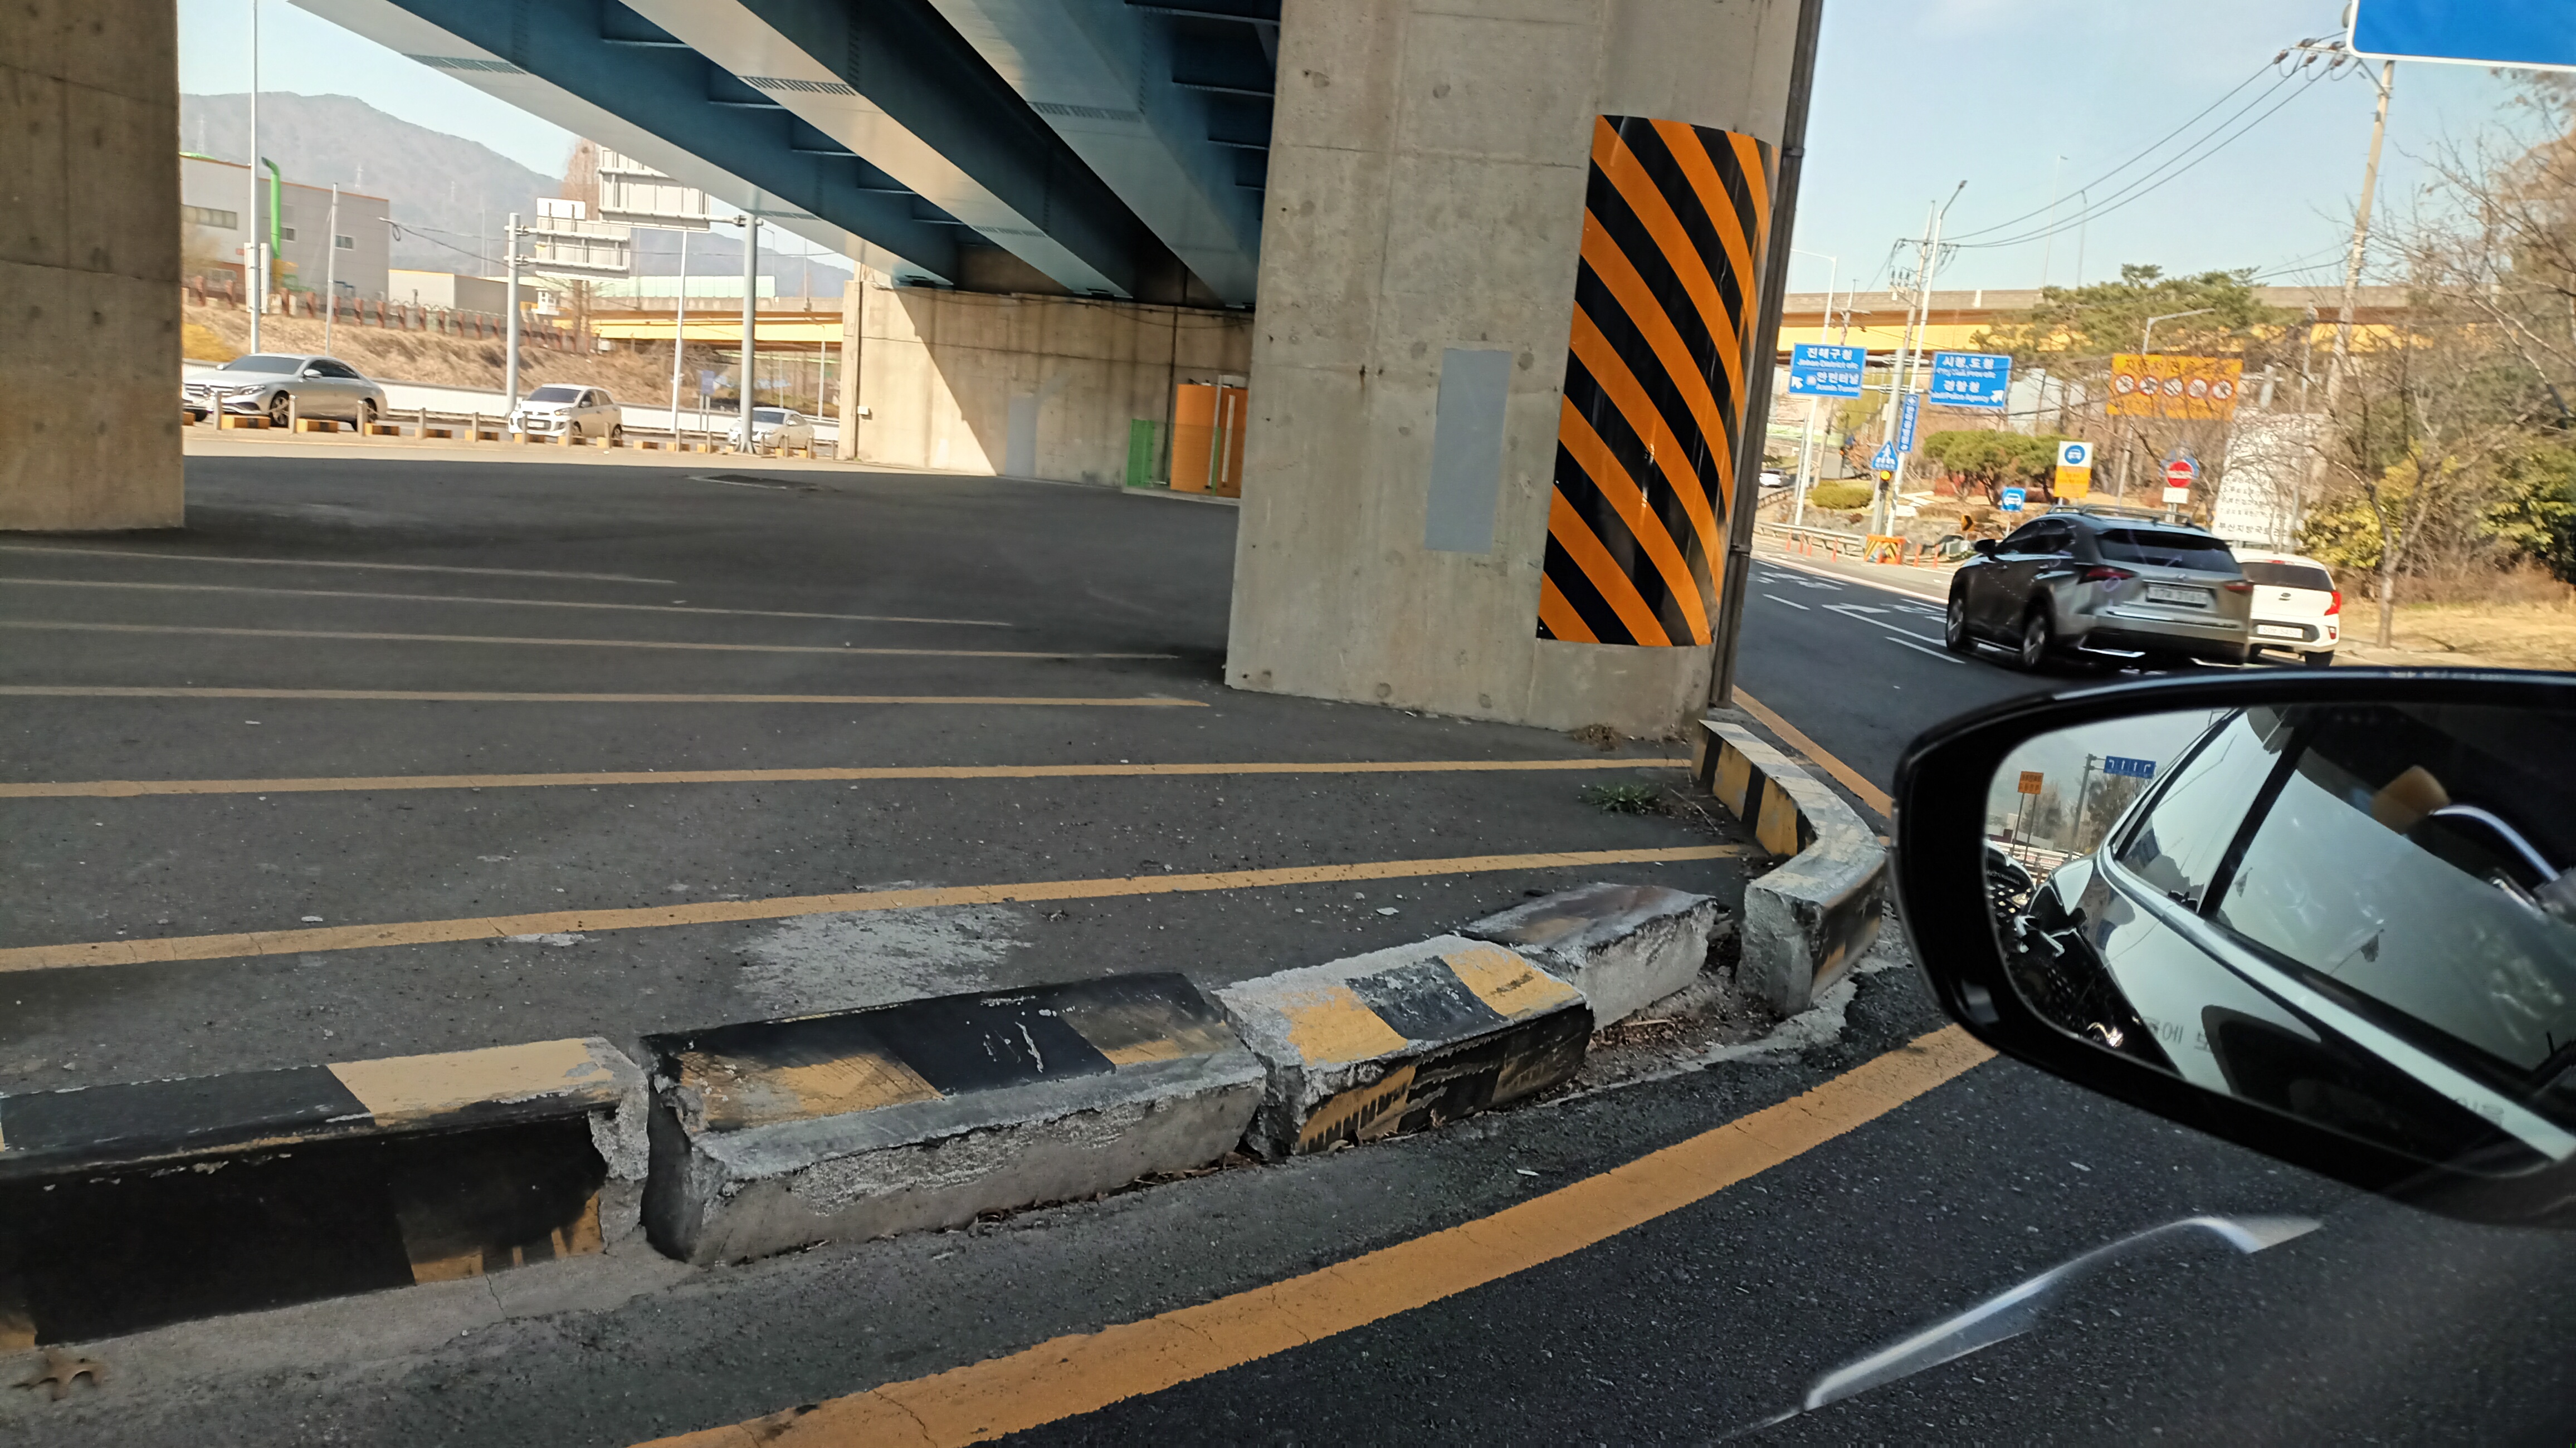 창이대로 삼정자교각 아래 도로변 갓길 안전침목 대리석 불량 재시공 제안  본문  1번째 이미지입니다.